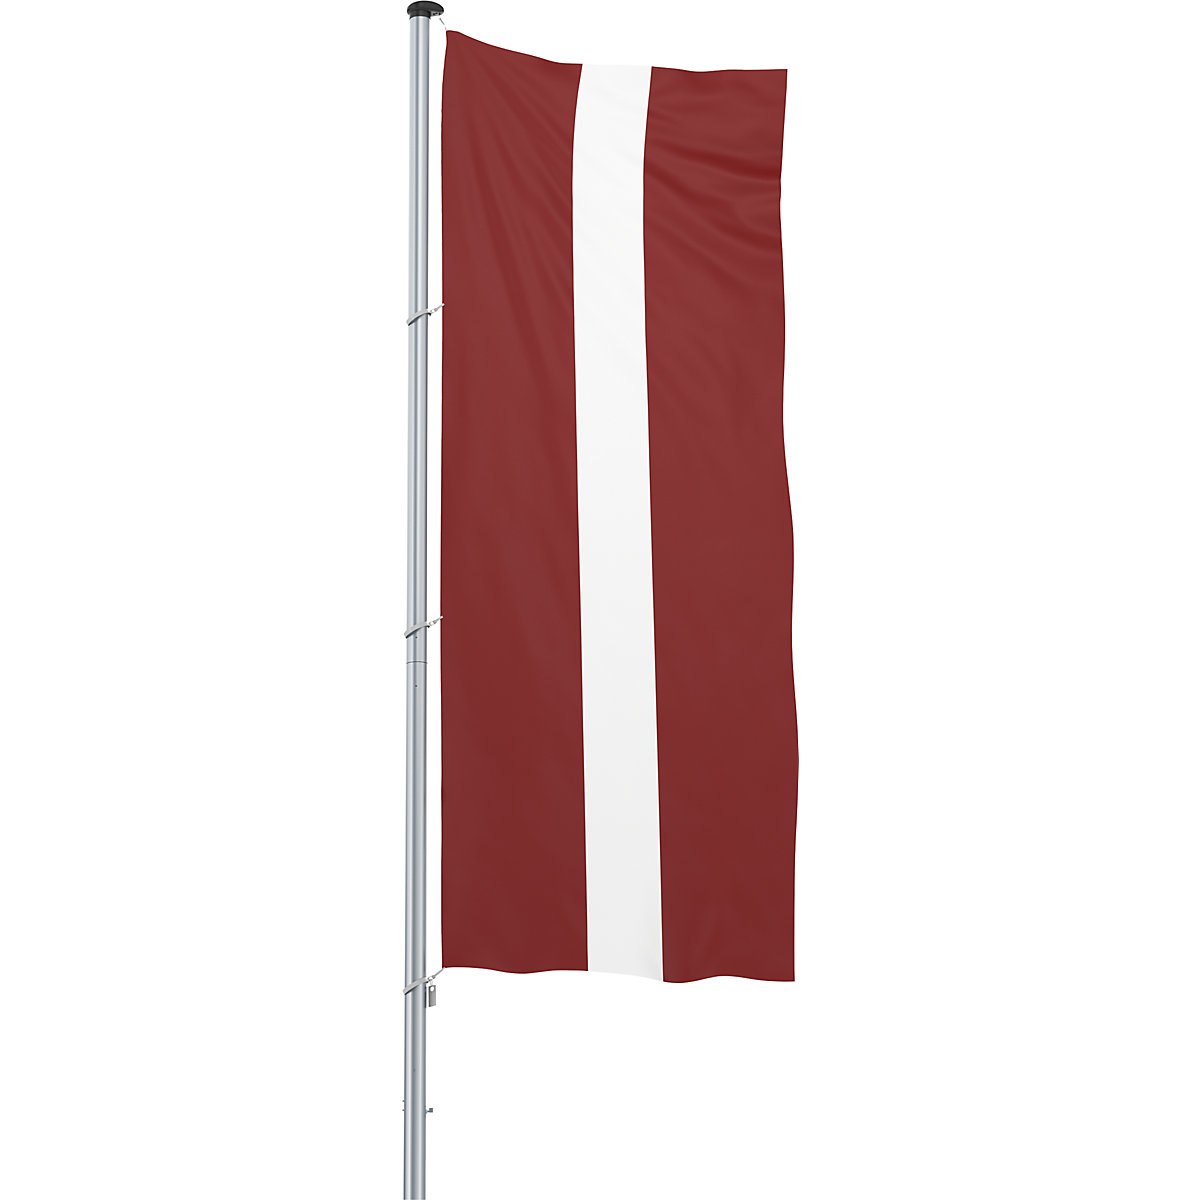 Hijsvlag/landvlag – Mannus, formaat 1,2 x 3 m, Letland-9